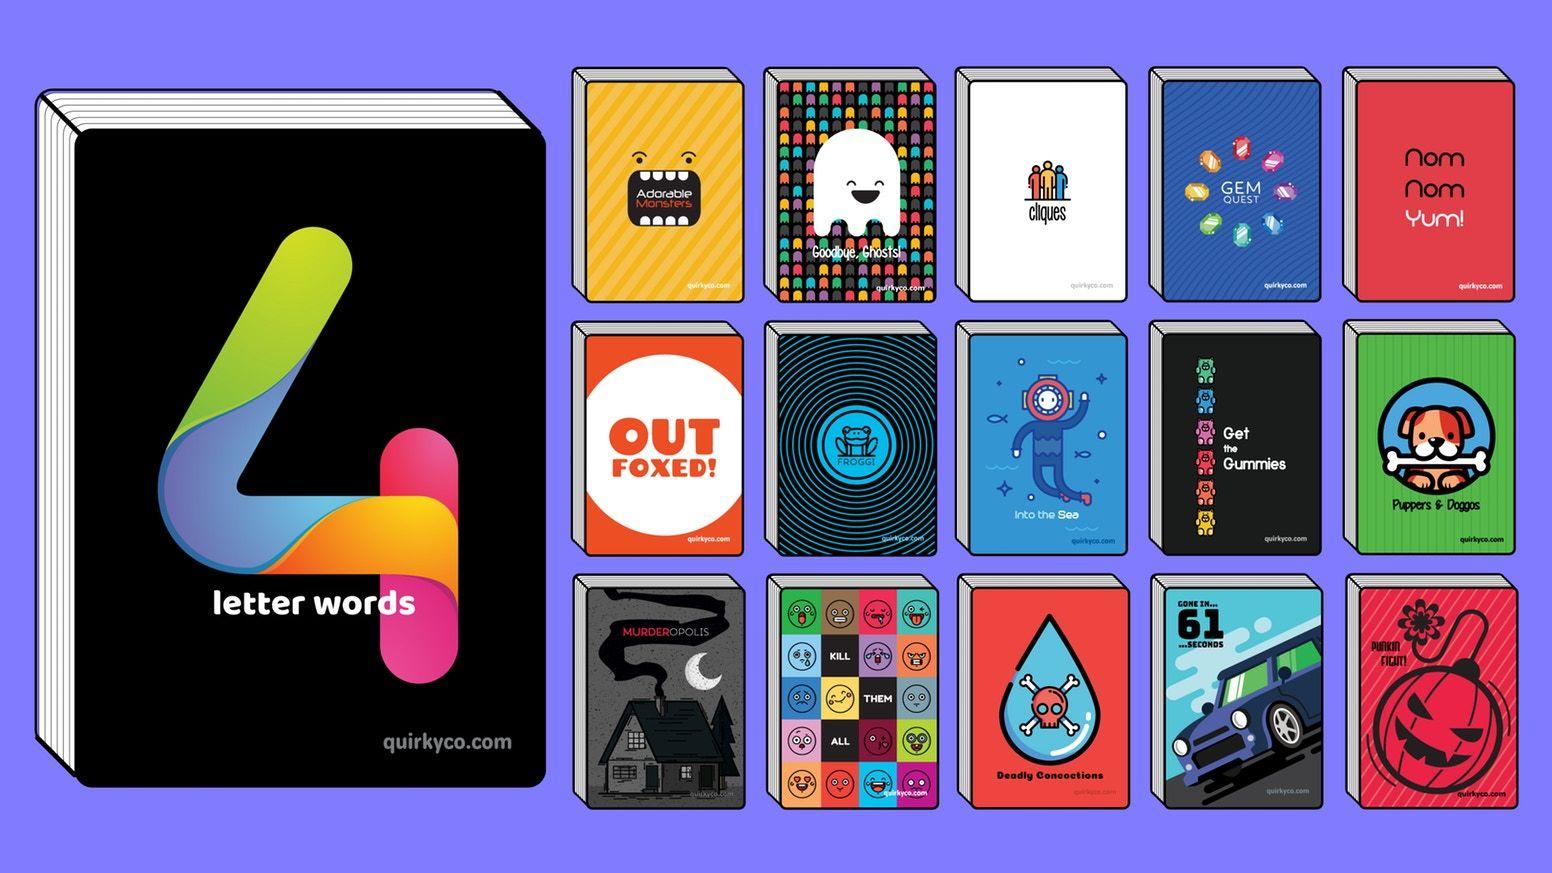 4 Letter Word Logo - 4 Letter Words (+15 More Games) by Joshua Mason — Kickstarter